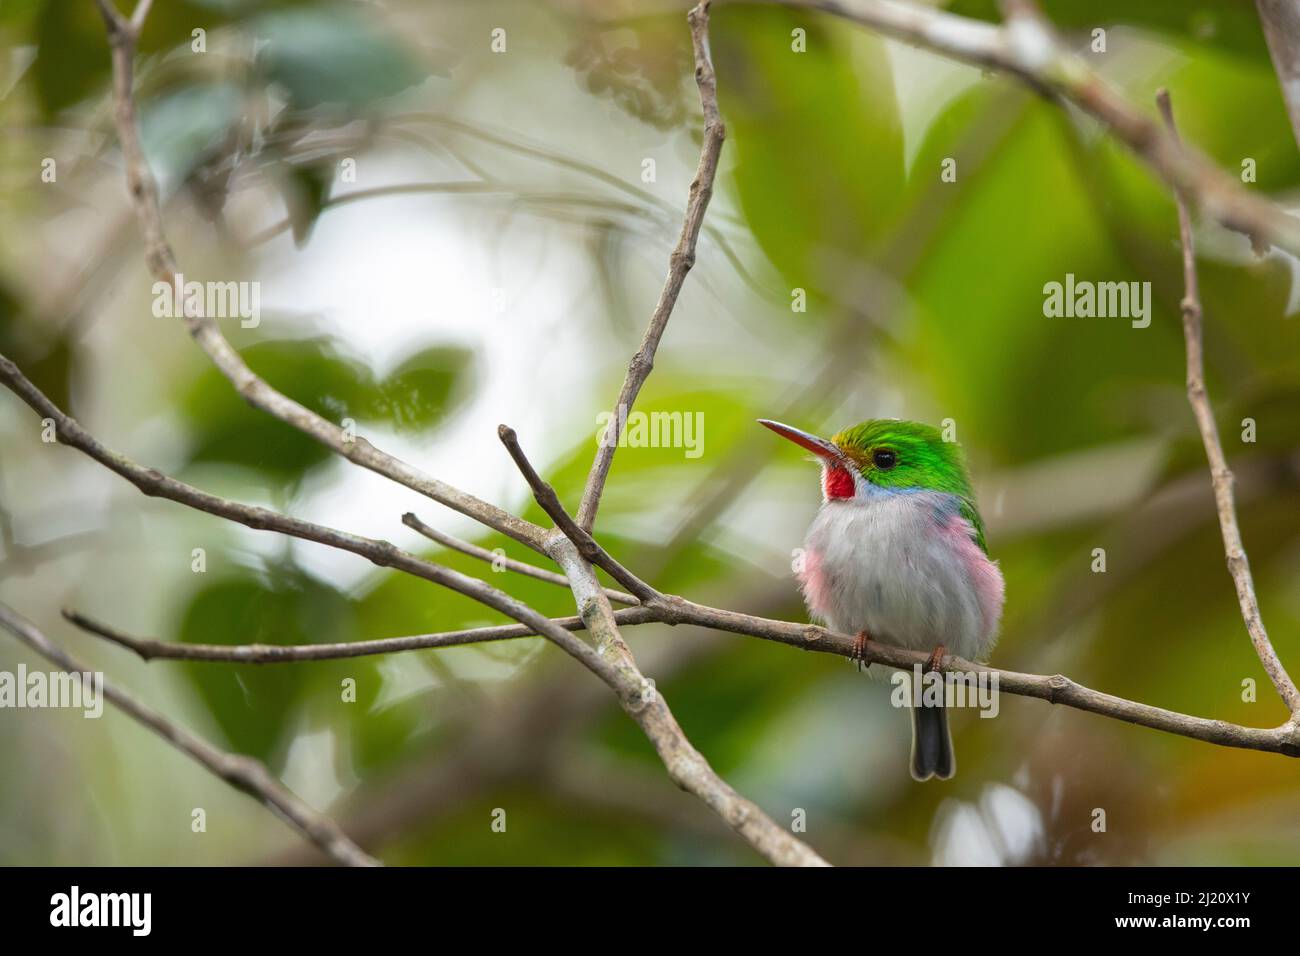 Tody cubain (Todus multicolore). Endémique à Cuba. Parc national de Humboldt, 2019. Banque D'Images